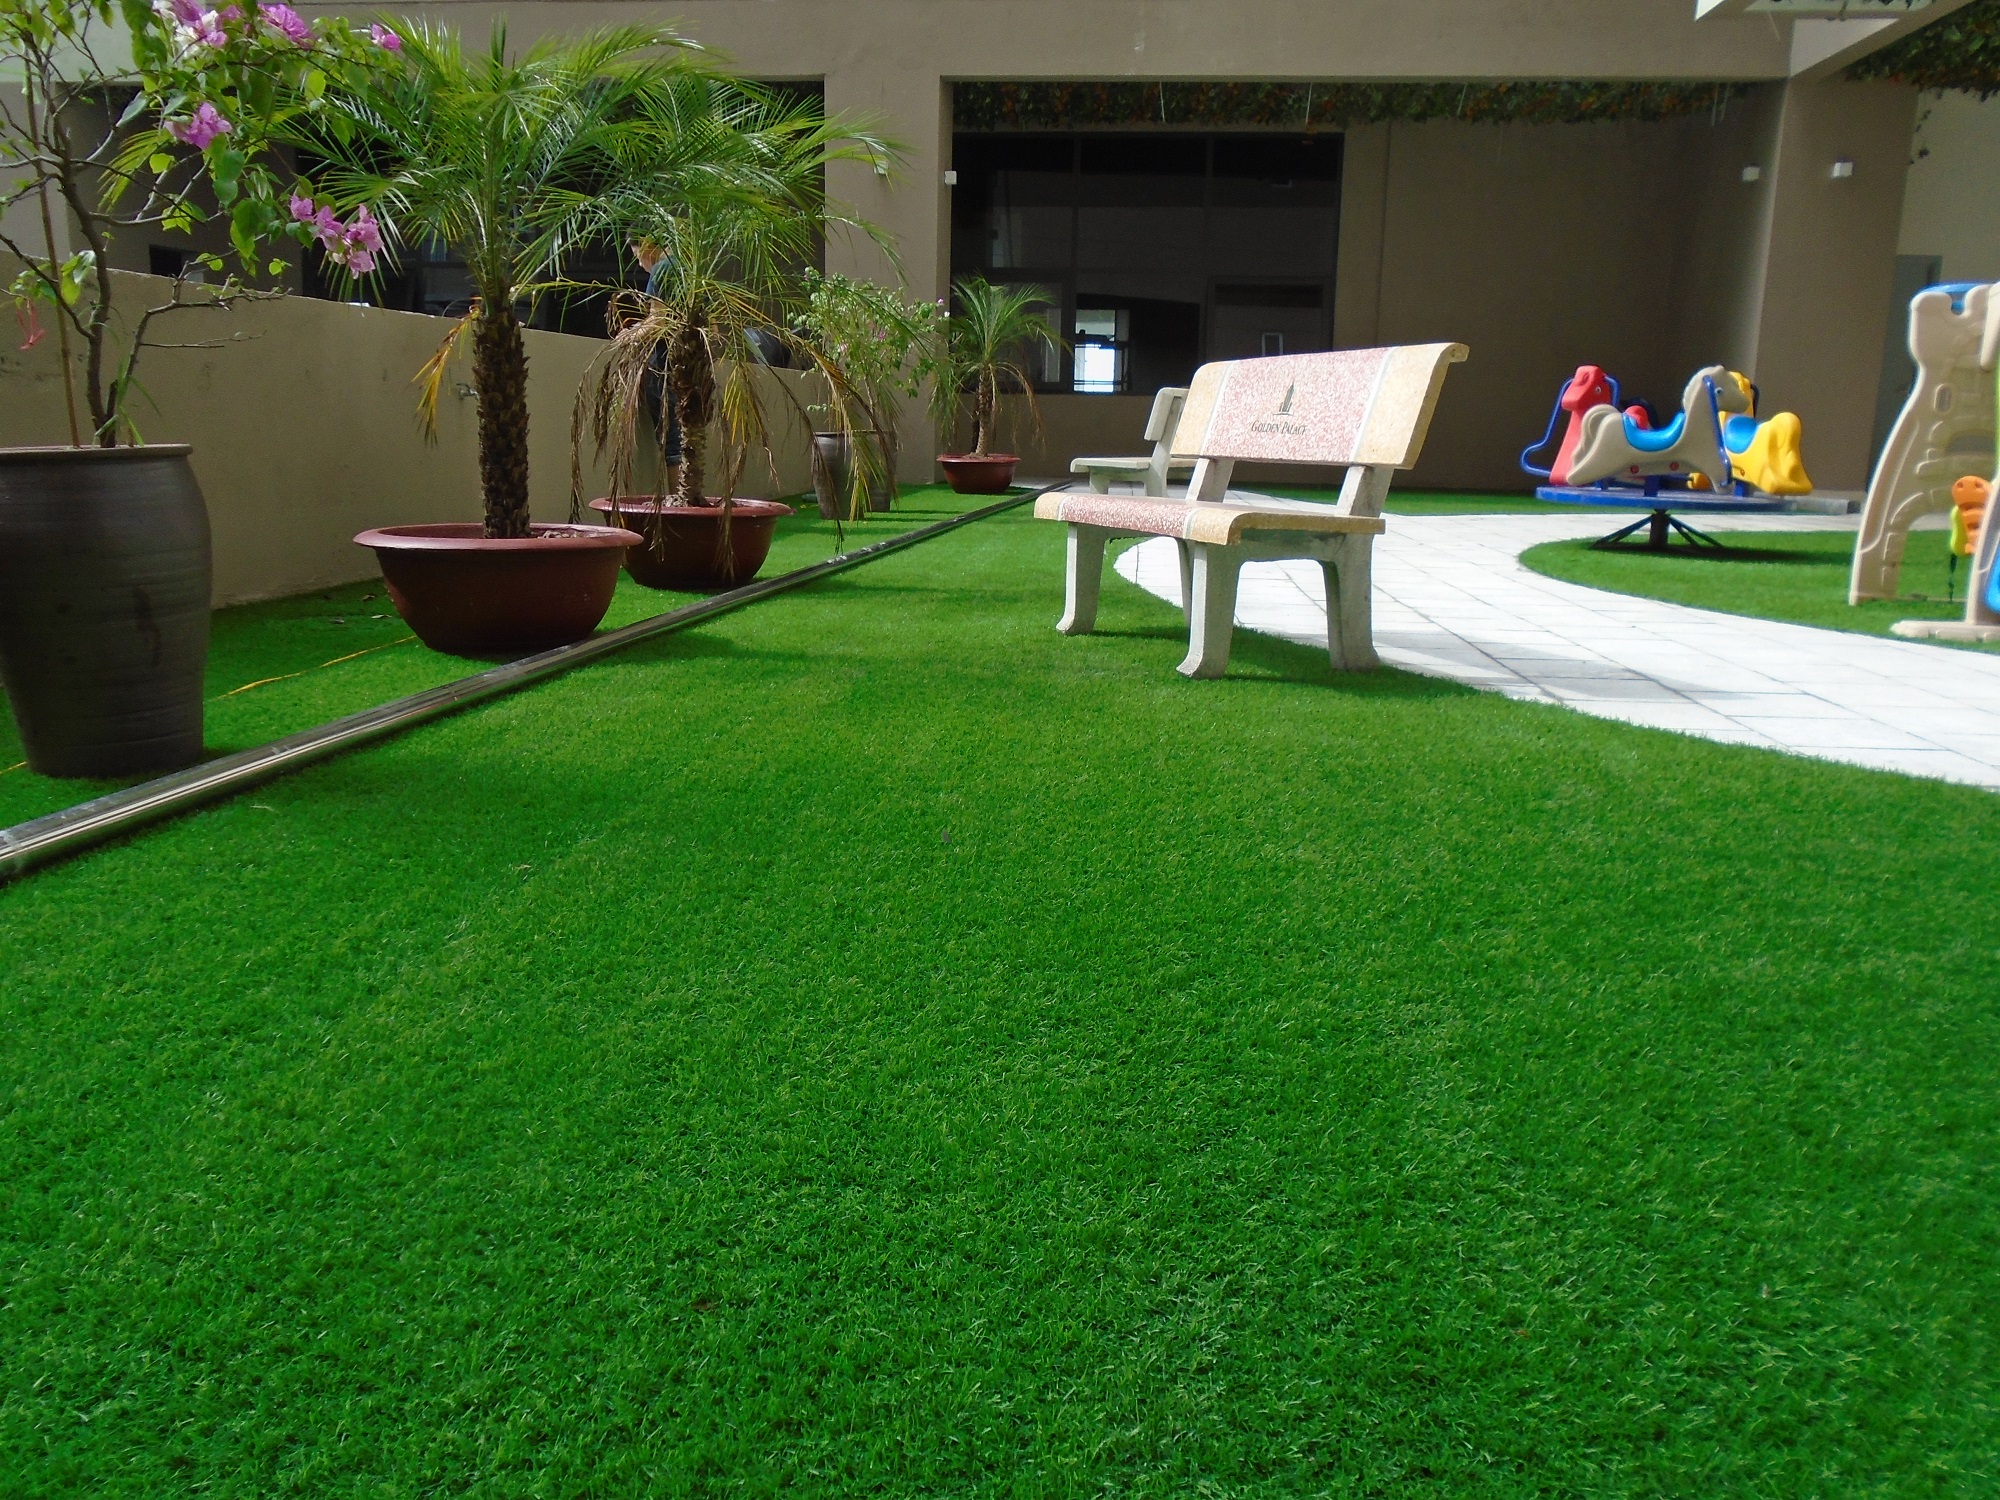 Thảm cỏ nhân tạo lót sàn trong nhà cao cấp giá tổng kho